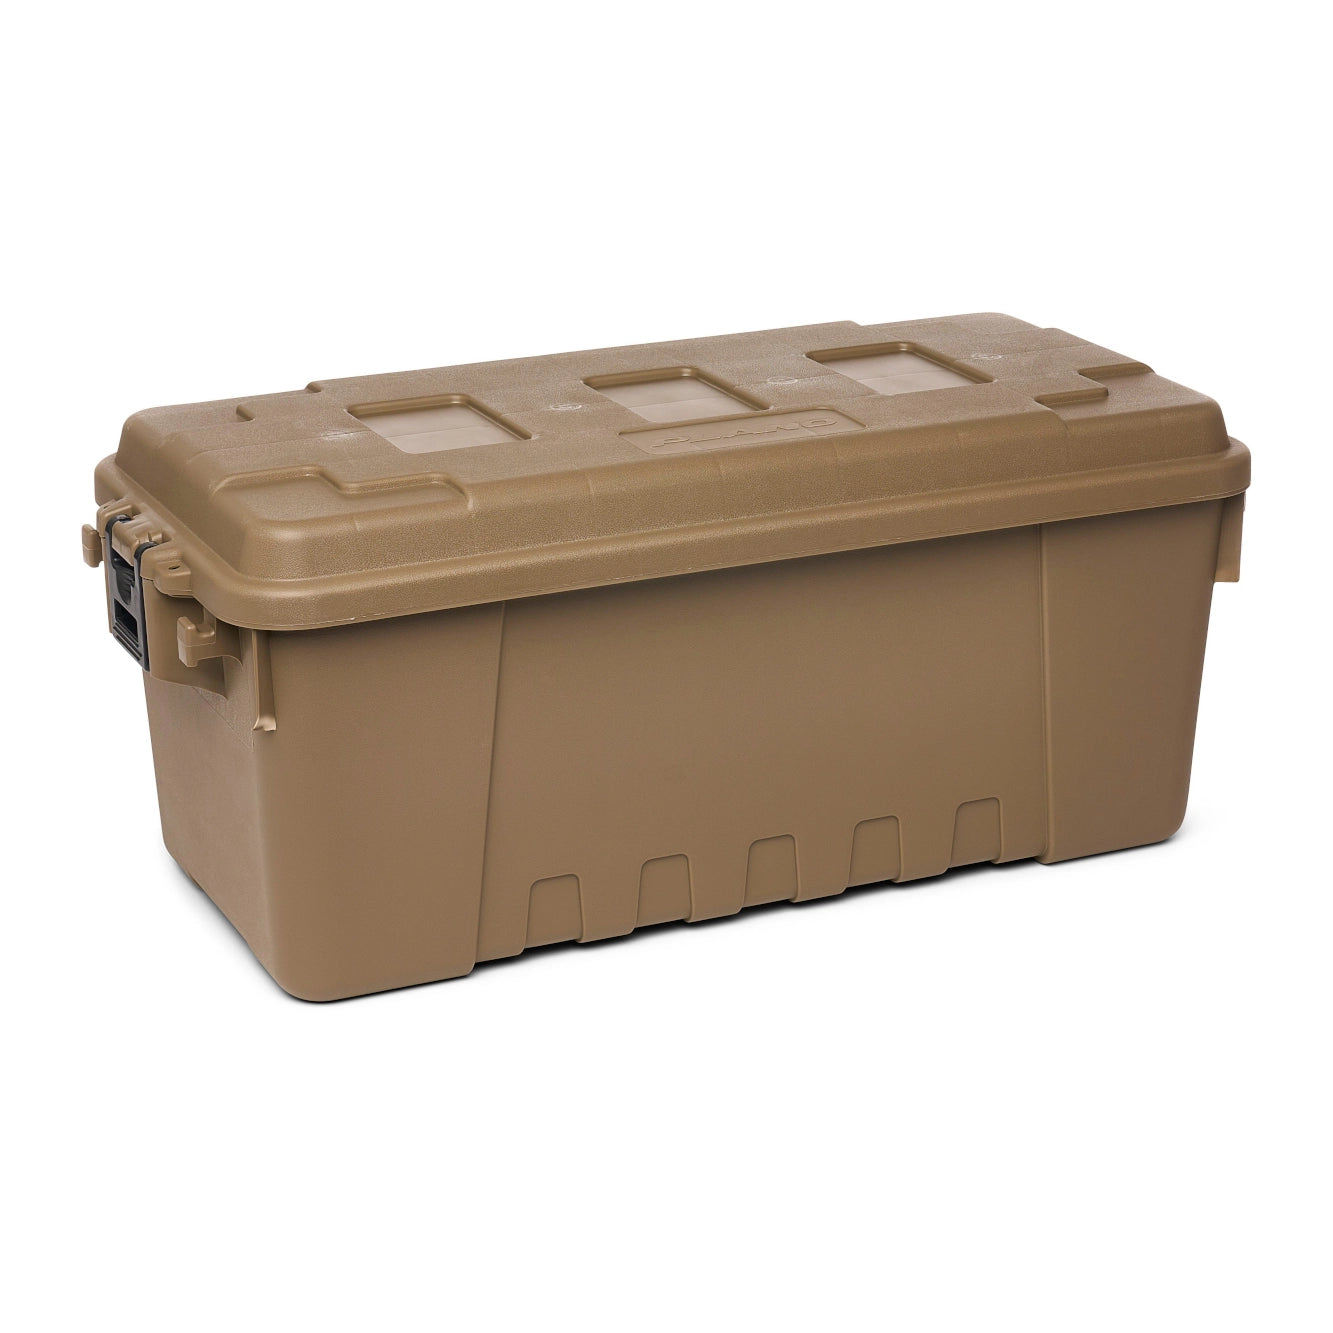 Medium tactical equipment box Plano 64-litre Tan